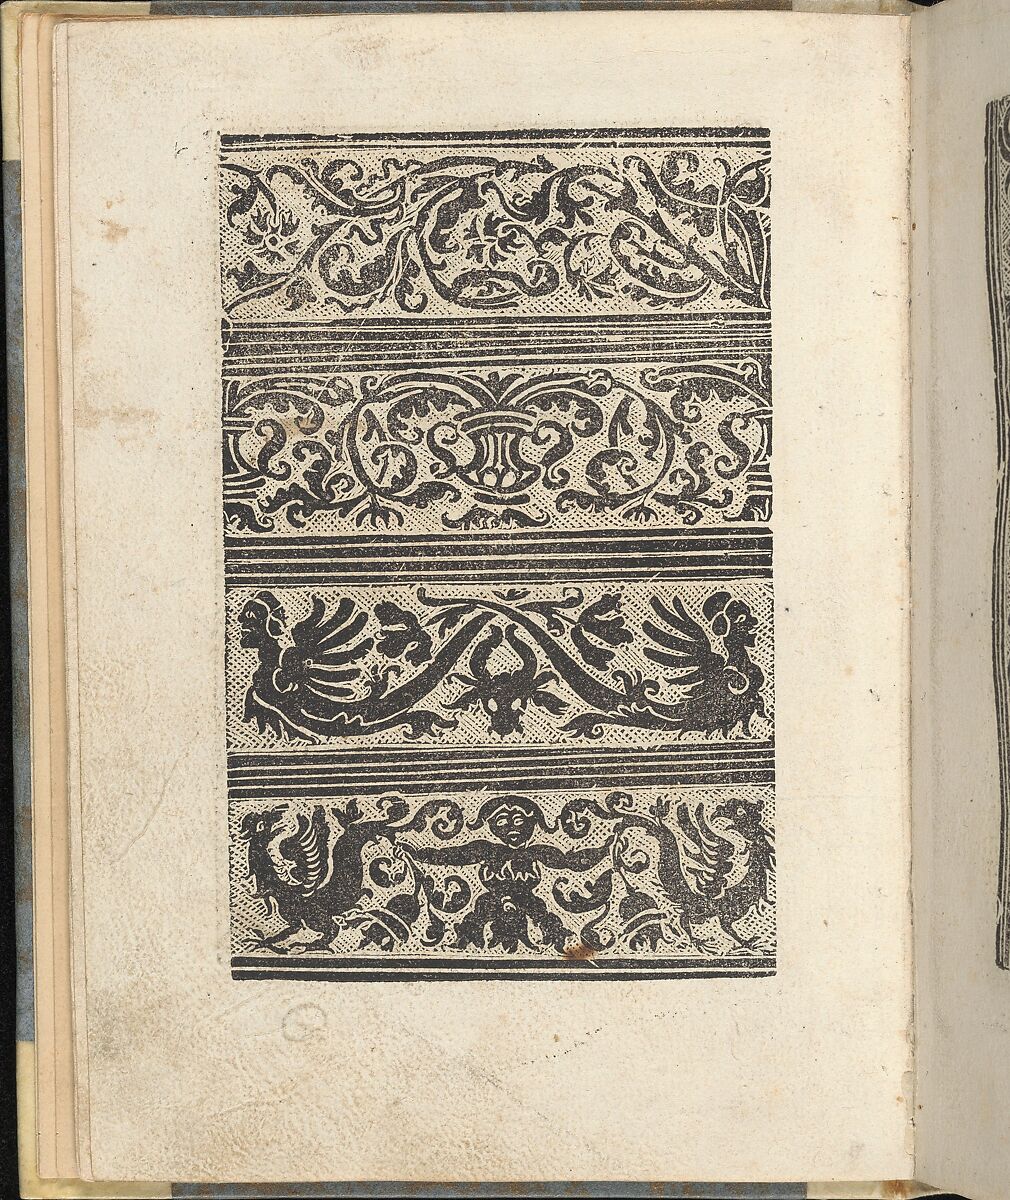 Ein ney Furmbüchlein, Page 11, verso, Johann Schönsperger the Younger (German, active 1510–30), Woodcut 